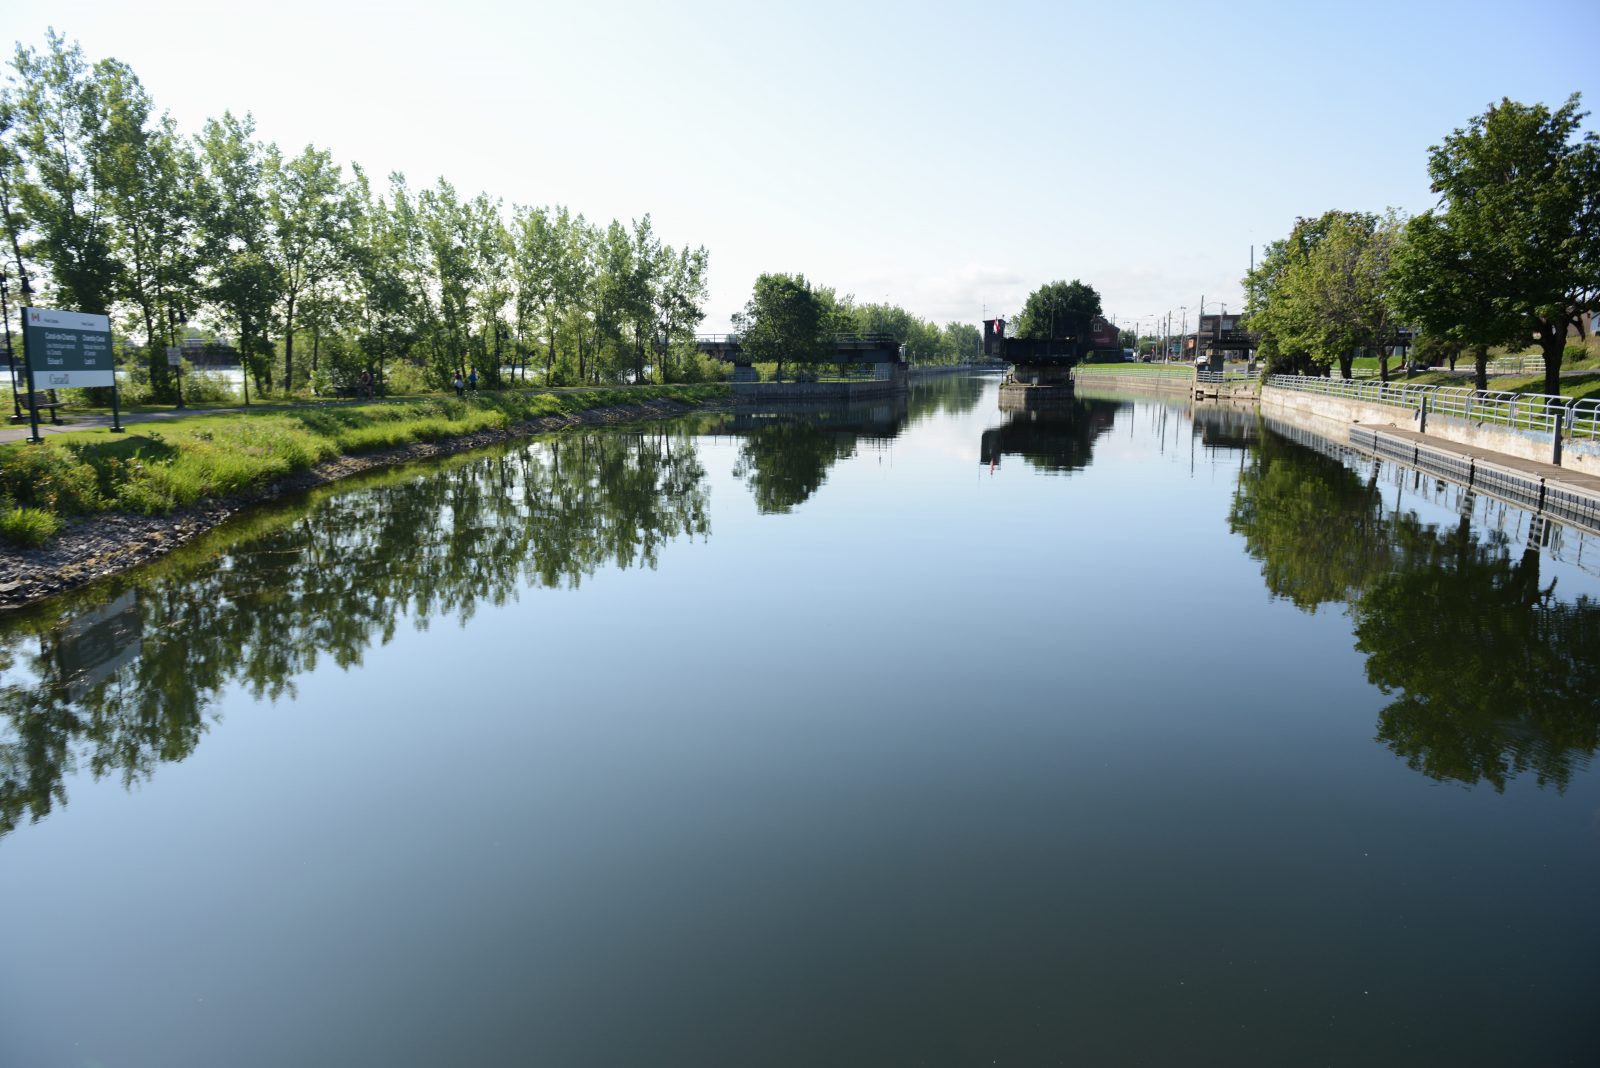 Le canal pourrait réduire le niveau de futures inondations